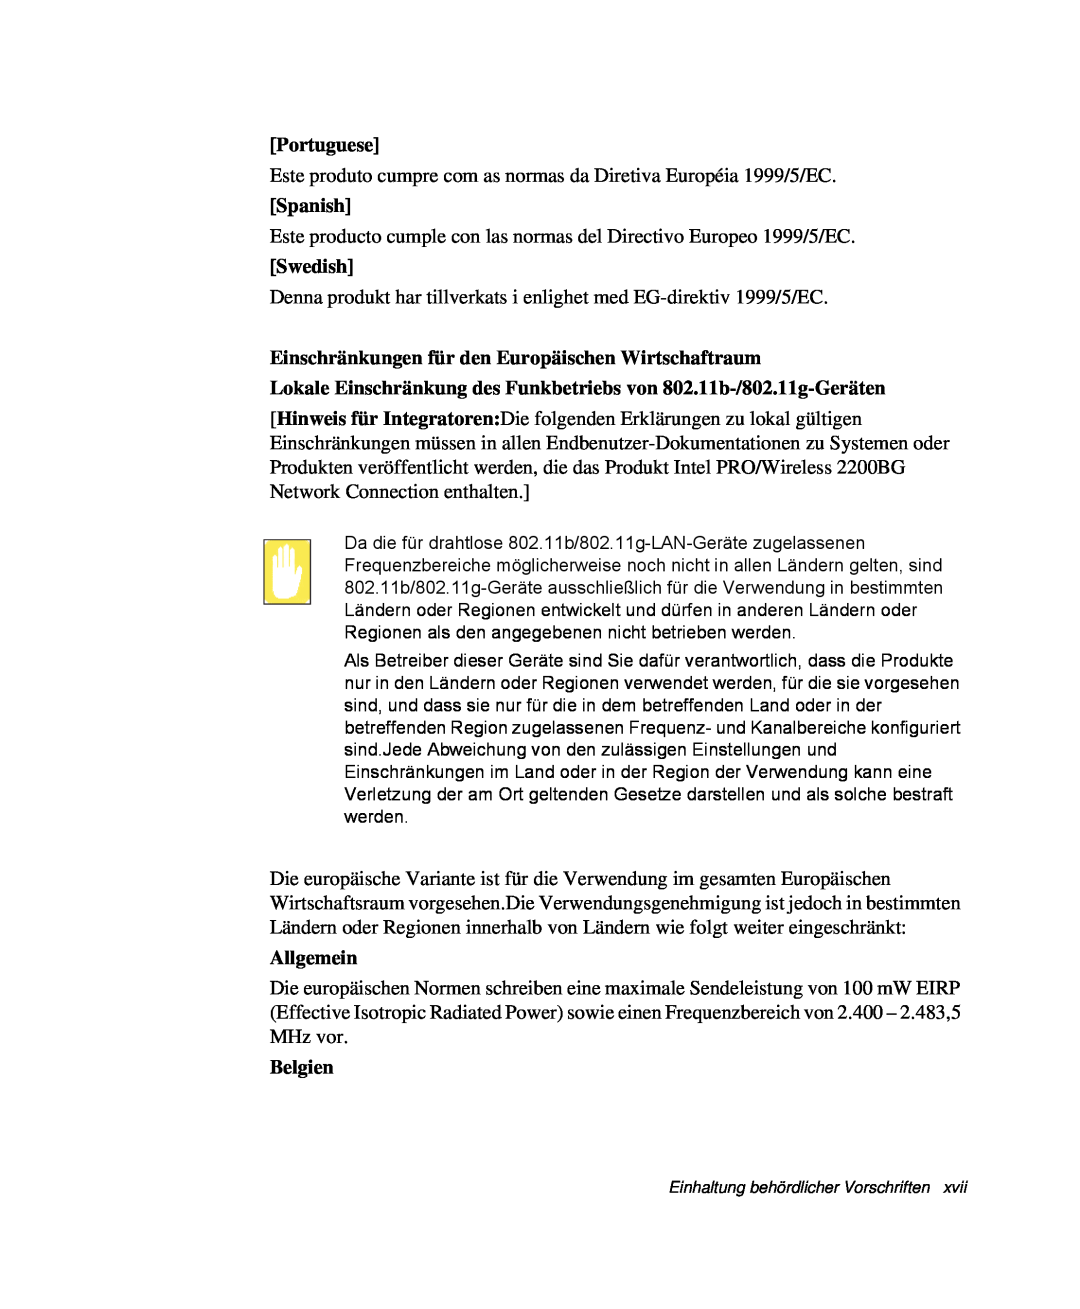 Samsung NP-X60C000/SEG manual Portuguese, Spanish, Swedish, Einschränkungen für den Europäischen Wirtschaftraum, Allgemein 